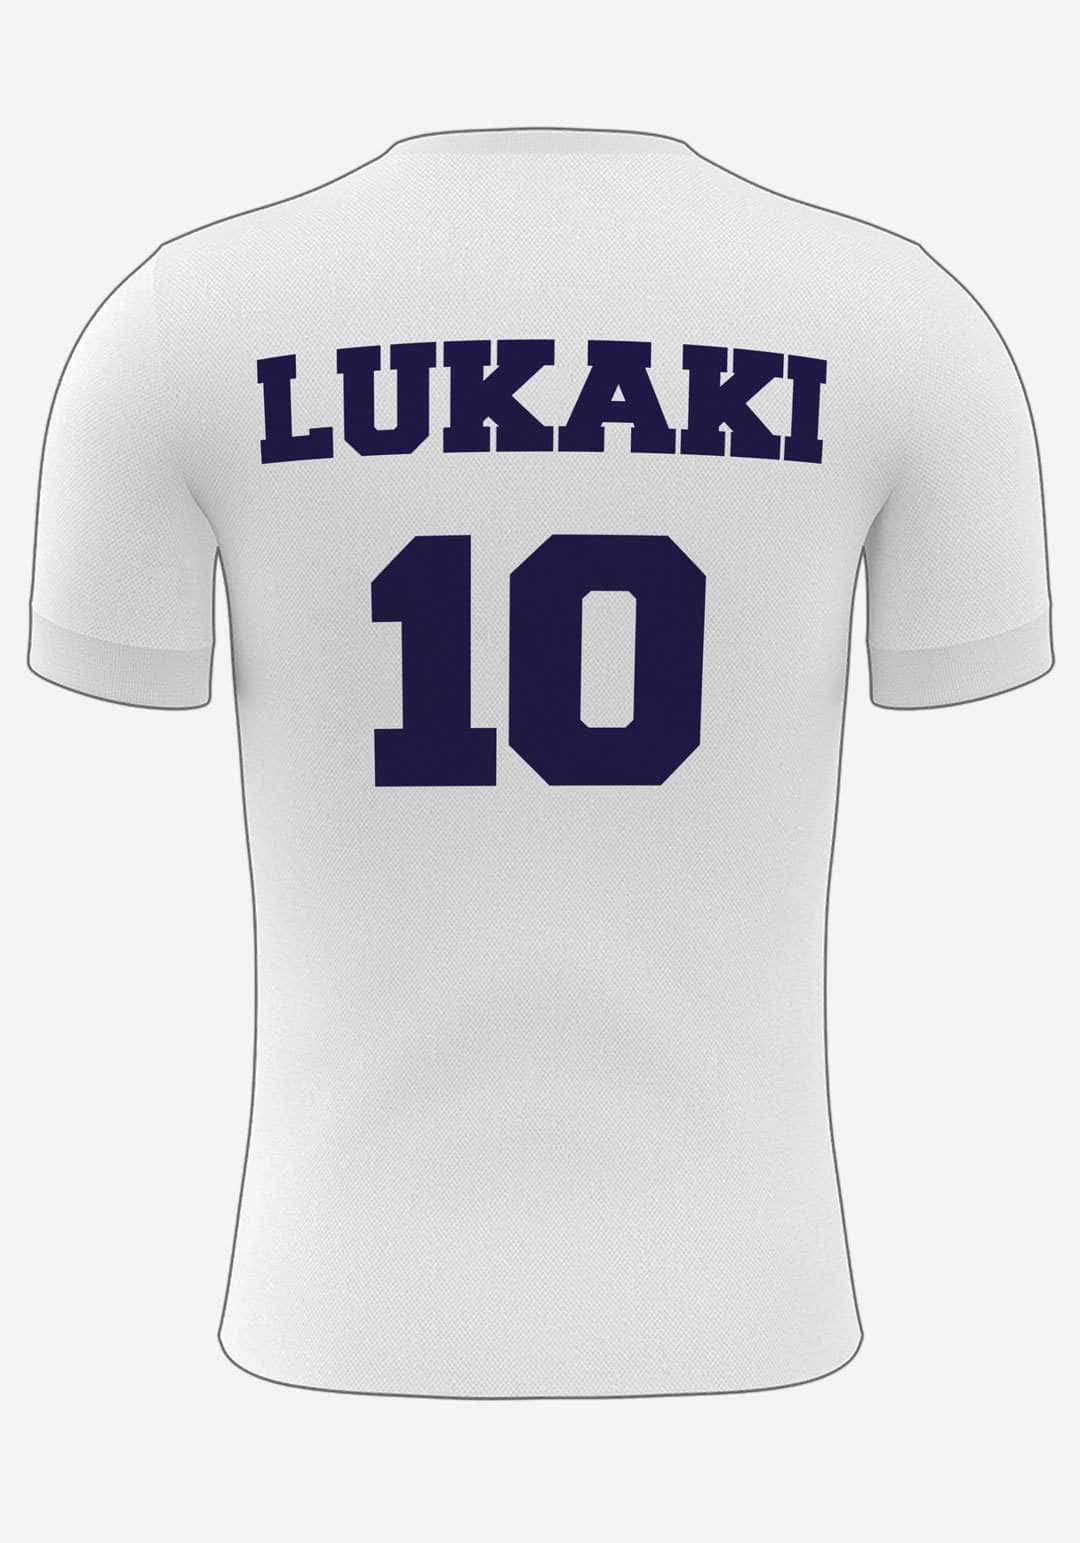 Se Tottenham Fodboldplakat - med eget navn og nummer, 21x30 hos Lukaki.dk